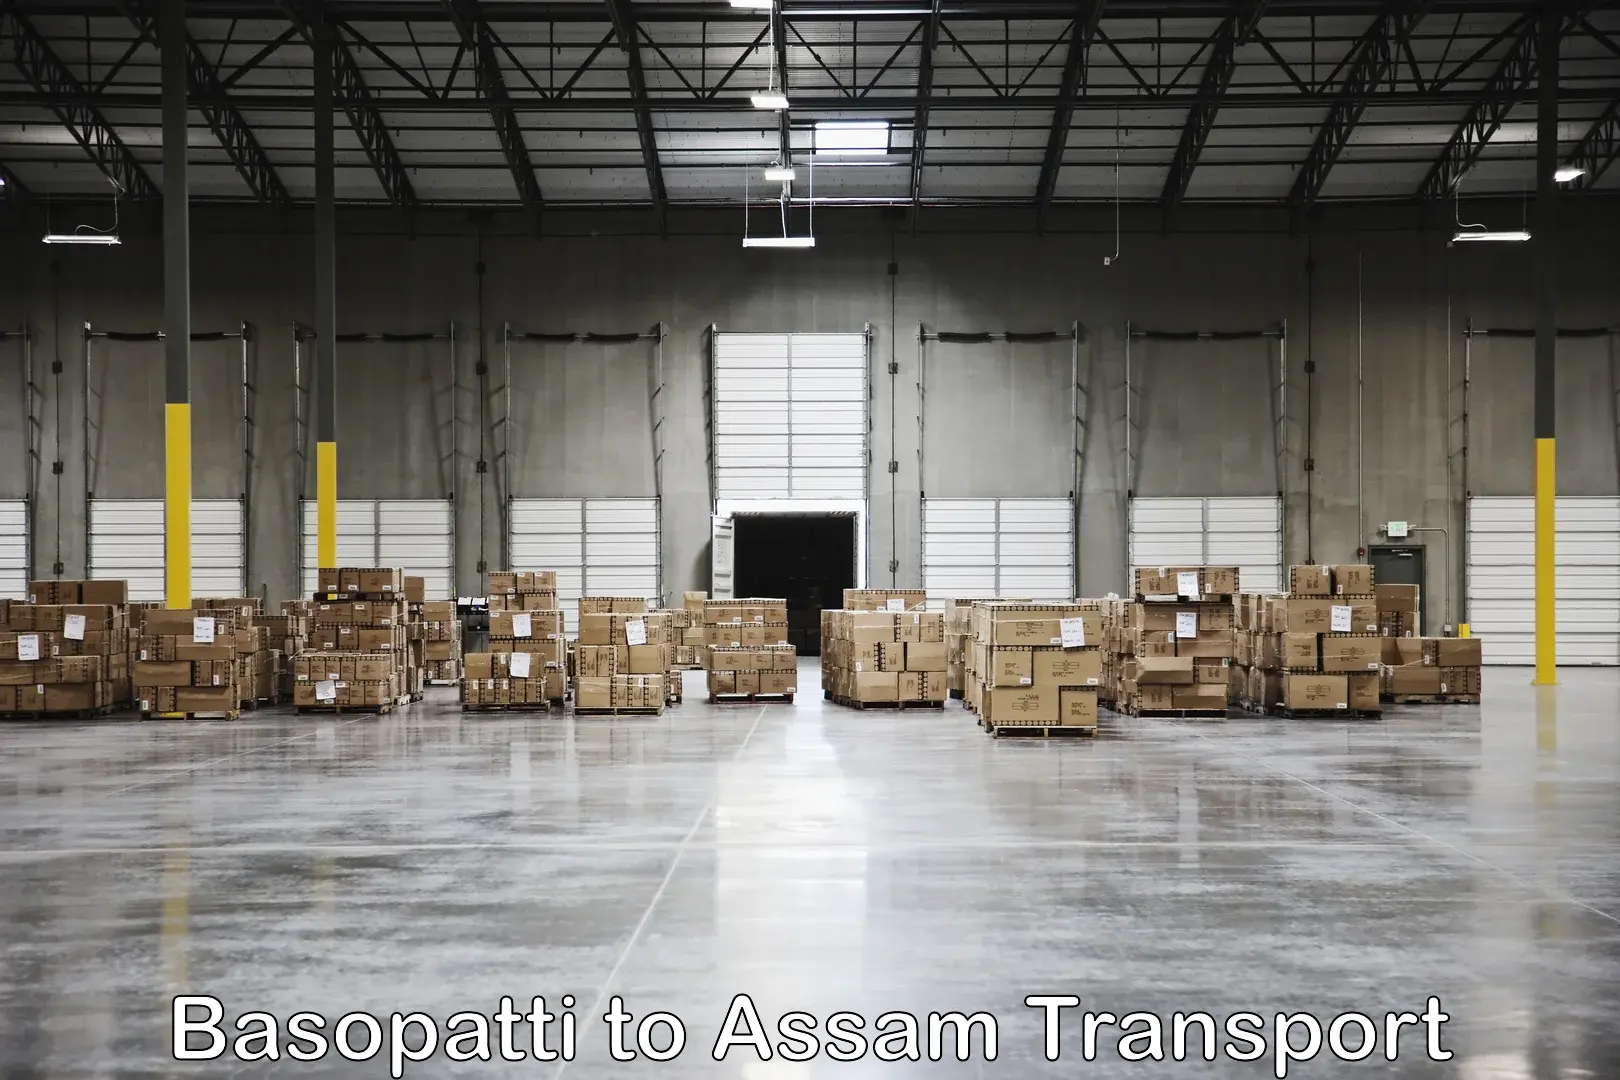 Daily parcel service transport Basopatti to Teok